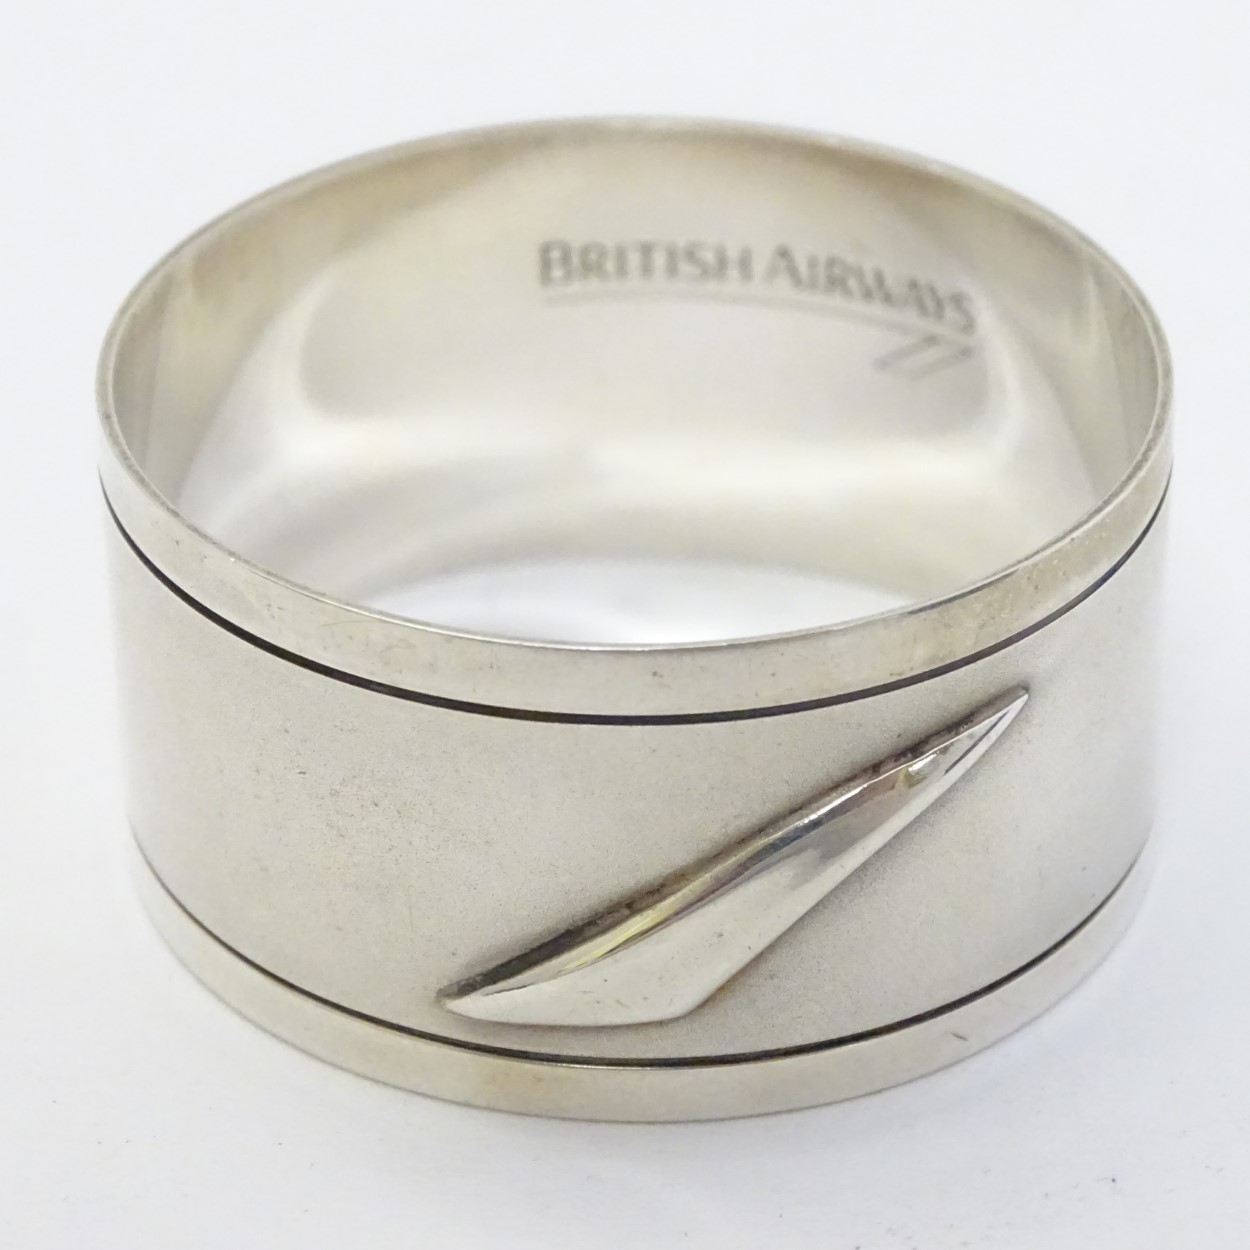 British Airways : A silver napkin ring with concord emblem hallmarked Sheffield 1992 maker British